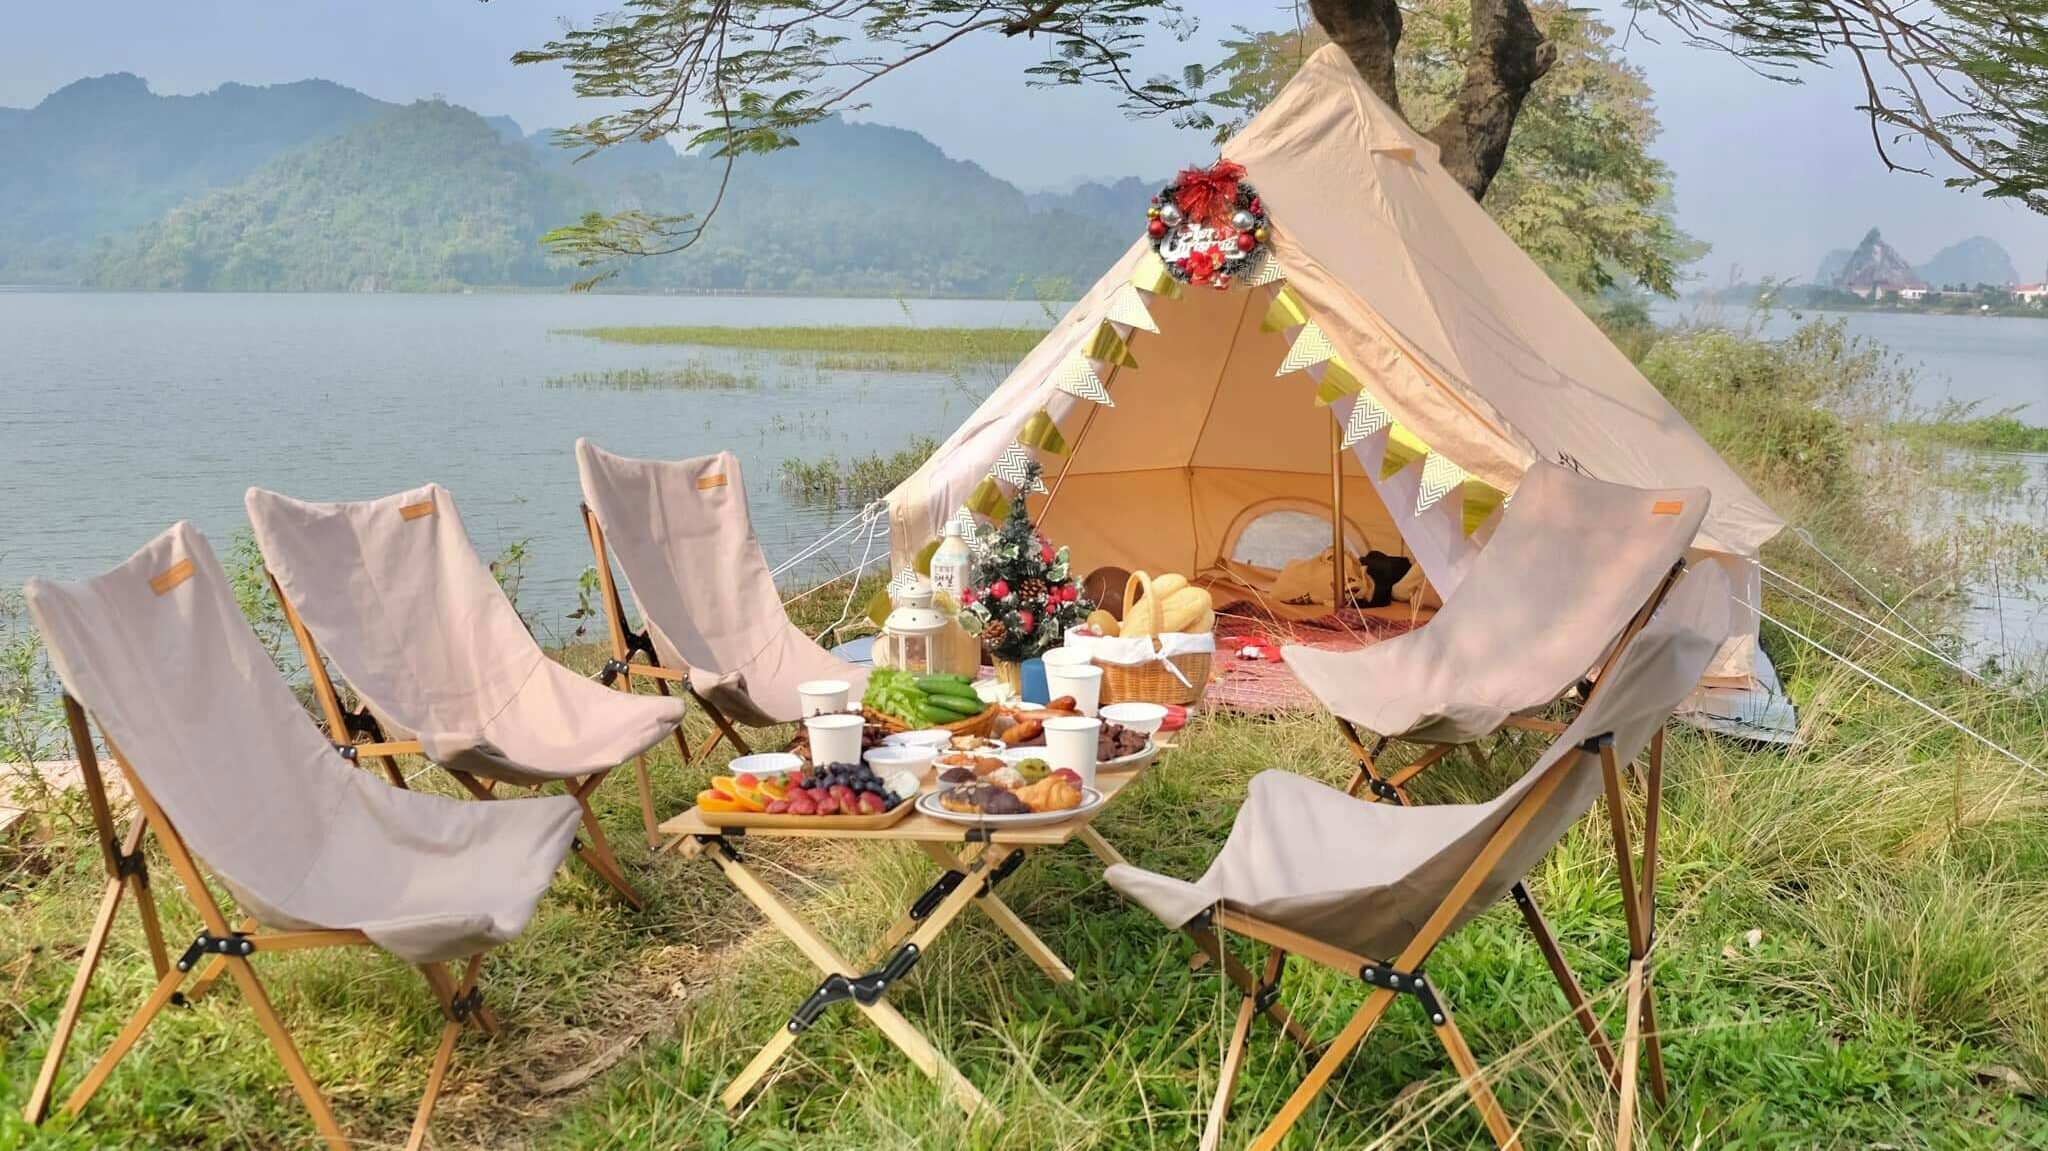 Địa điểm camping mùa hè mát rượi ở Hà Nội
